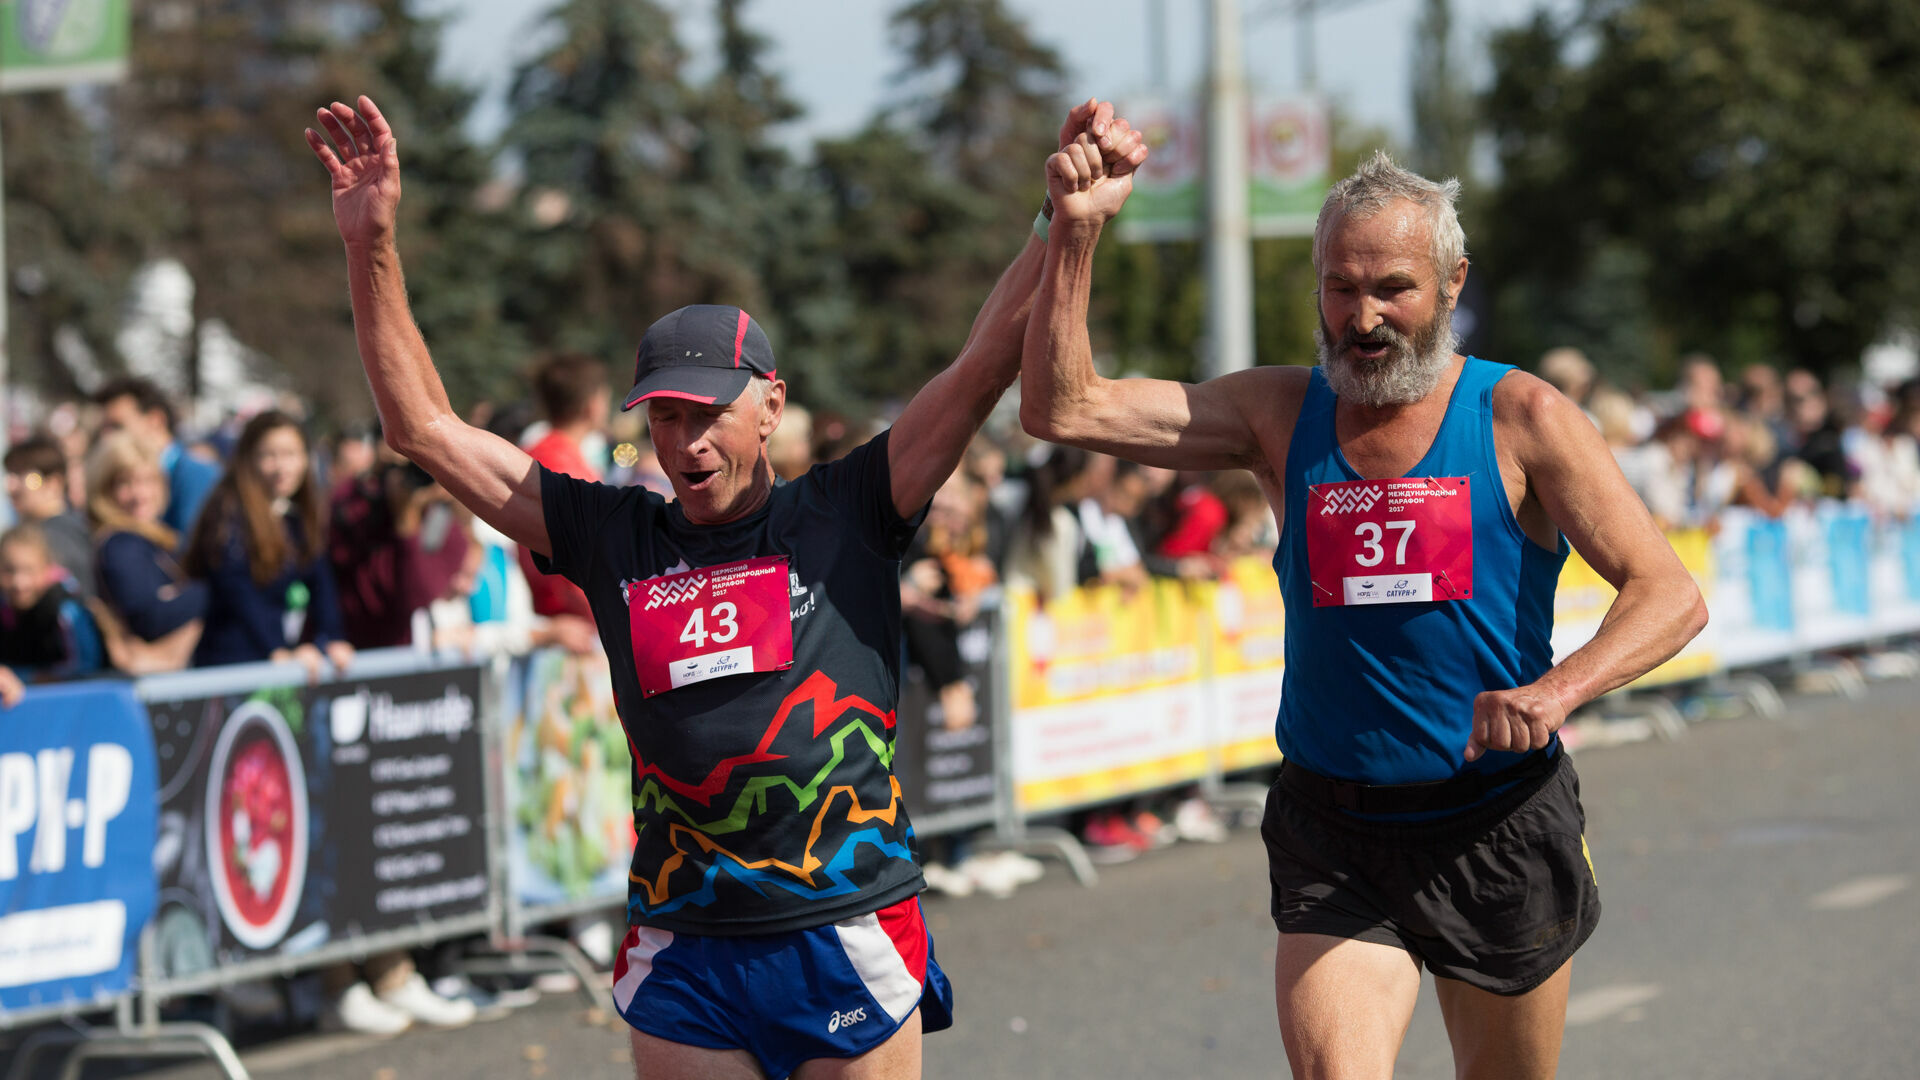 Комментировать Пермский международный марафон будет Дмитрий Губерниев